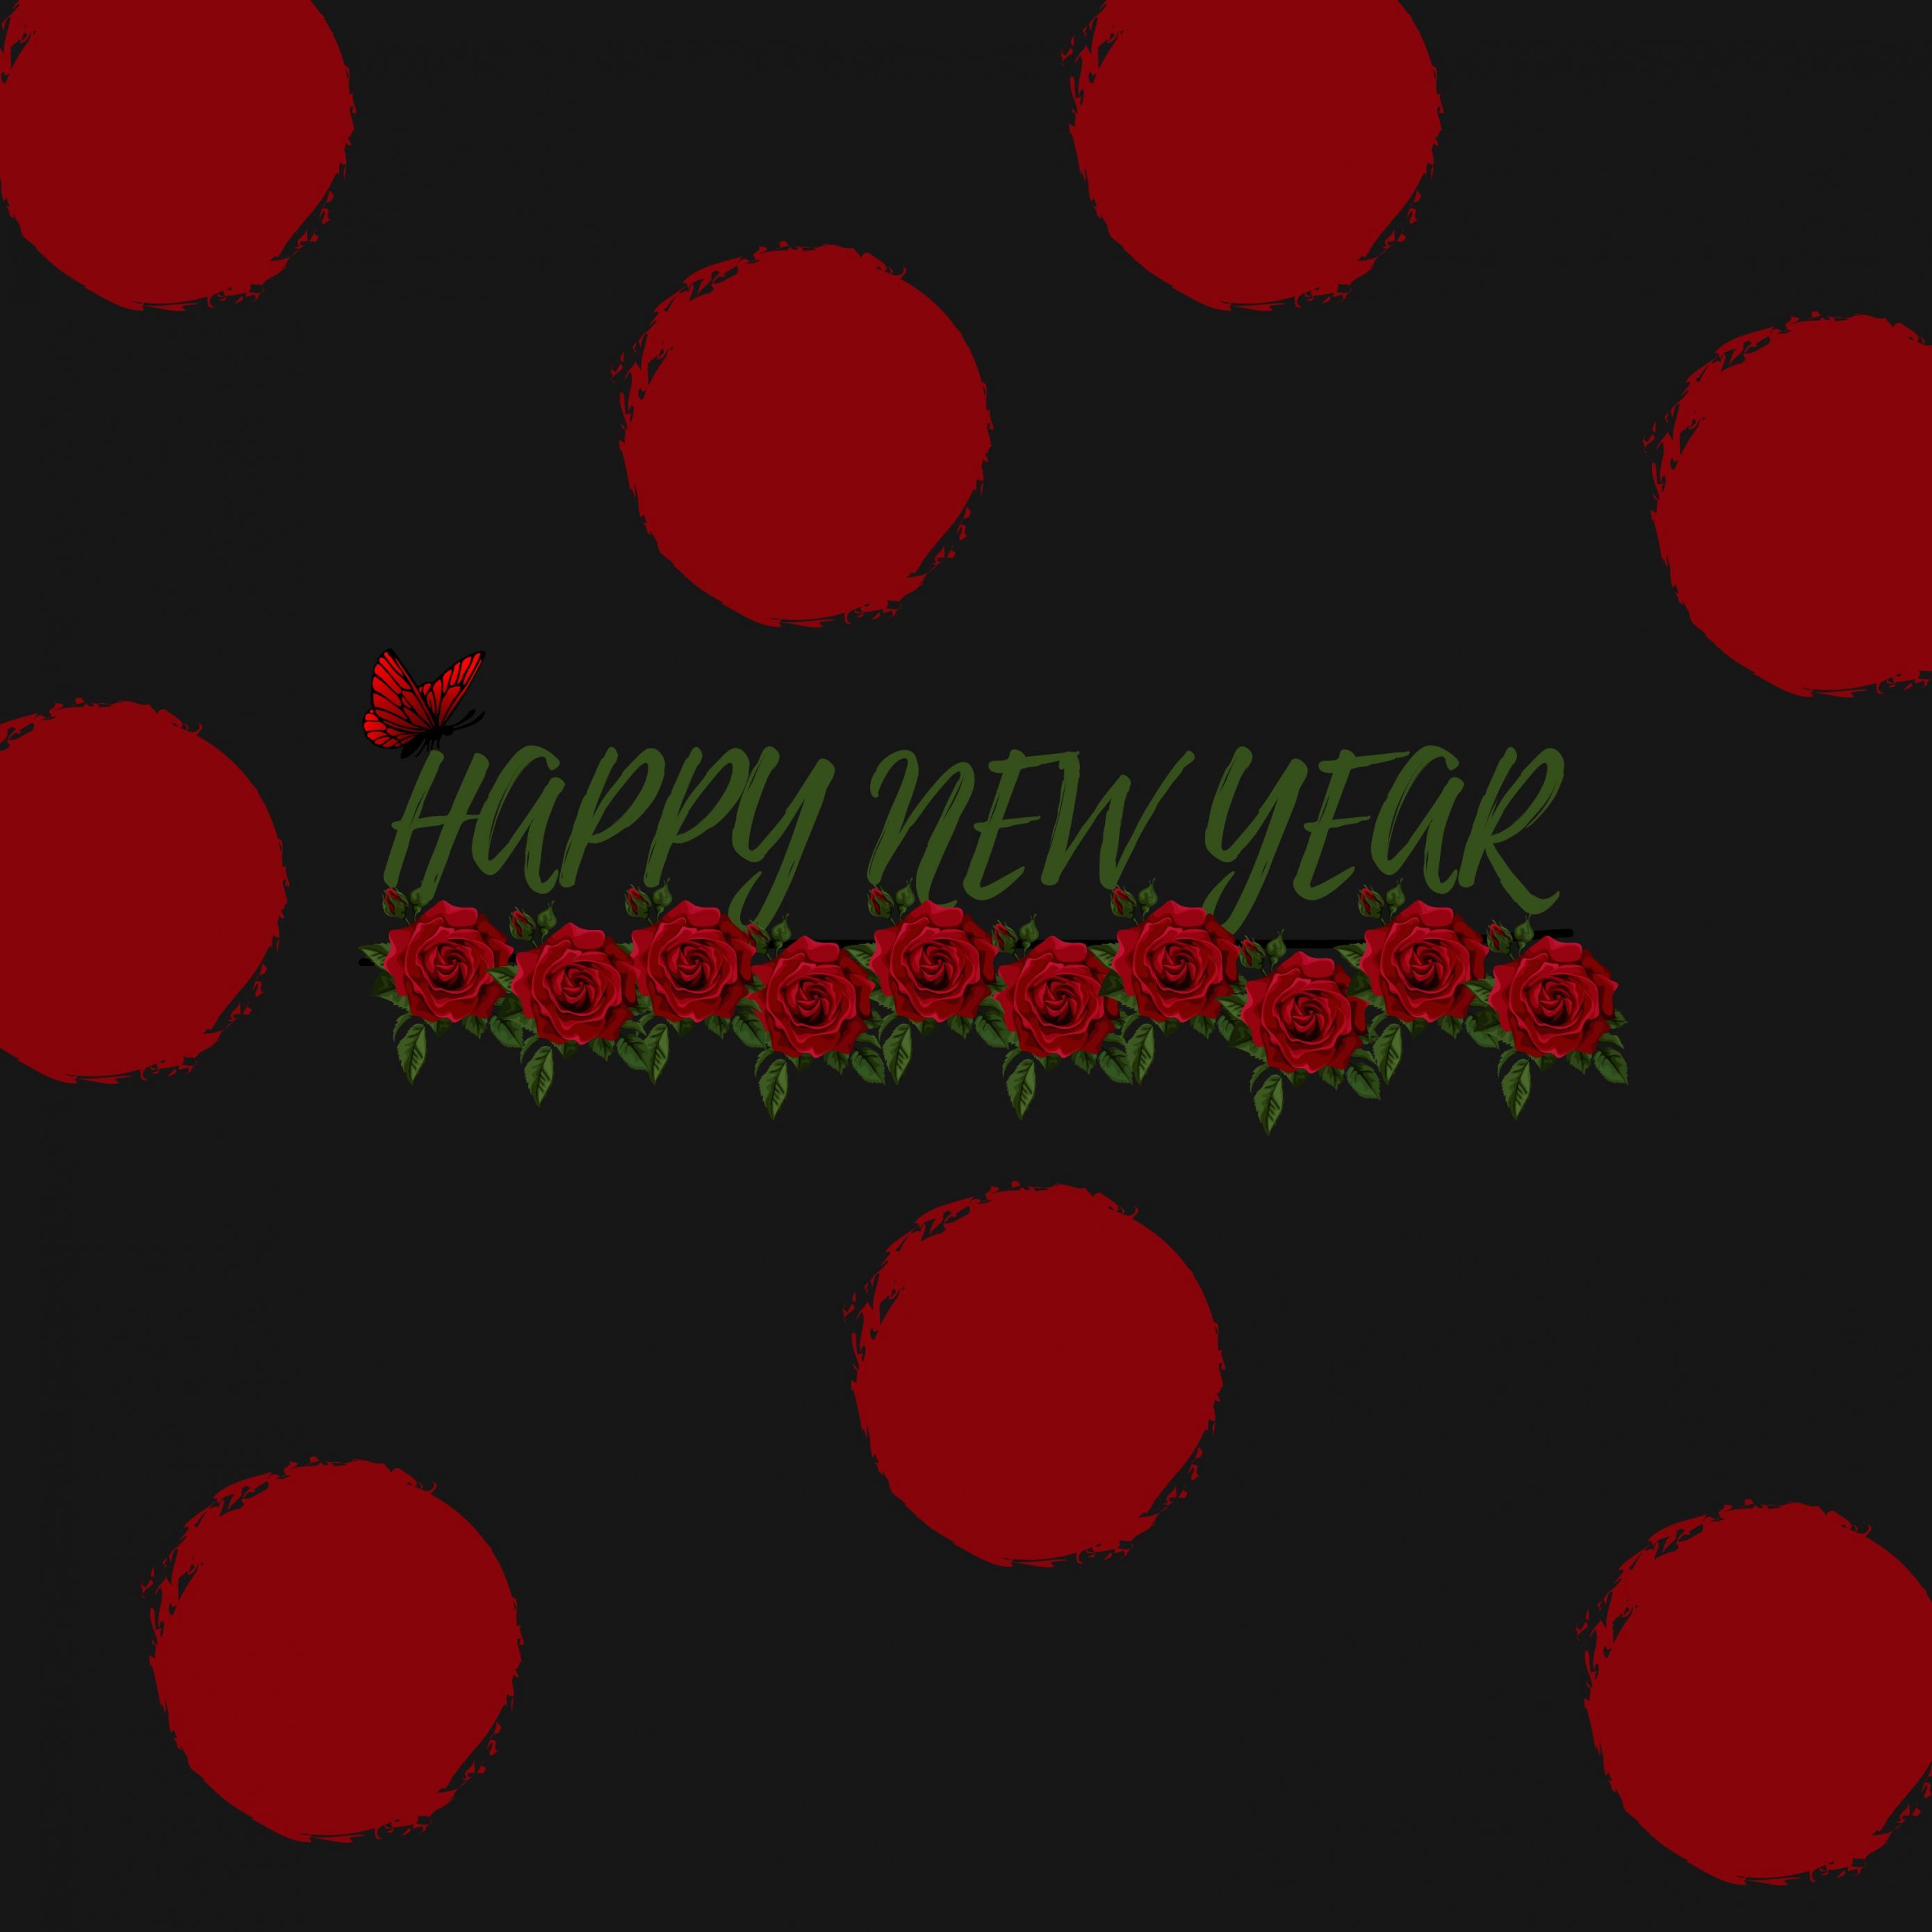 2780x2780 Parallax wallpaper 4k Red Poka Dot New Year Ipad Wallpaper 2780x2780 pixels resolution